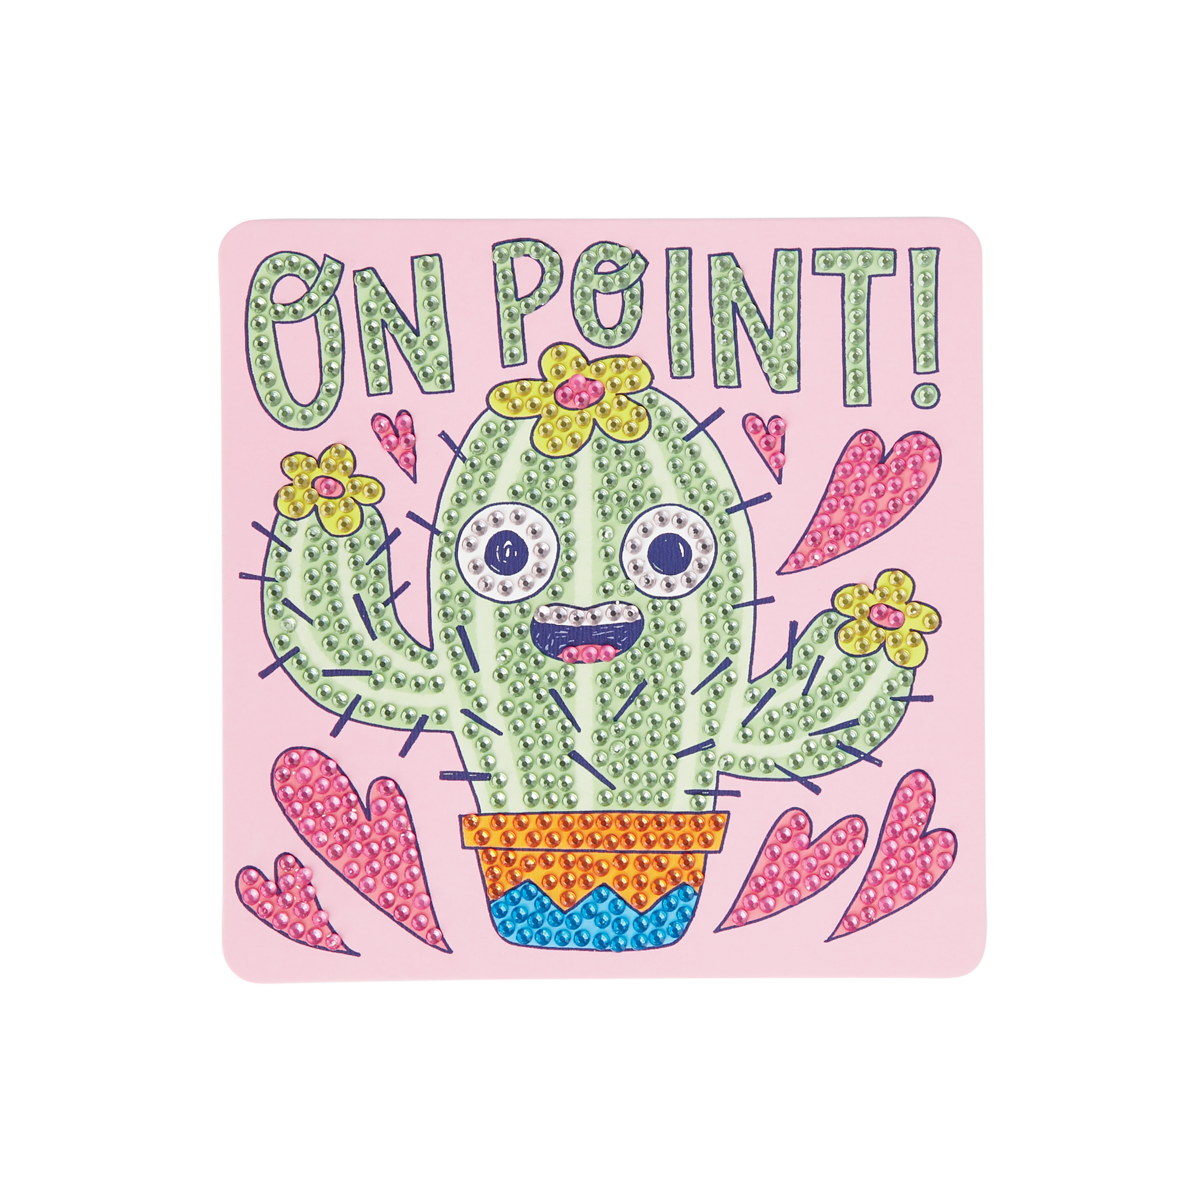 Razzle Dazzle DIY Mini Gem Art Kit Cheery Cactus